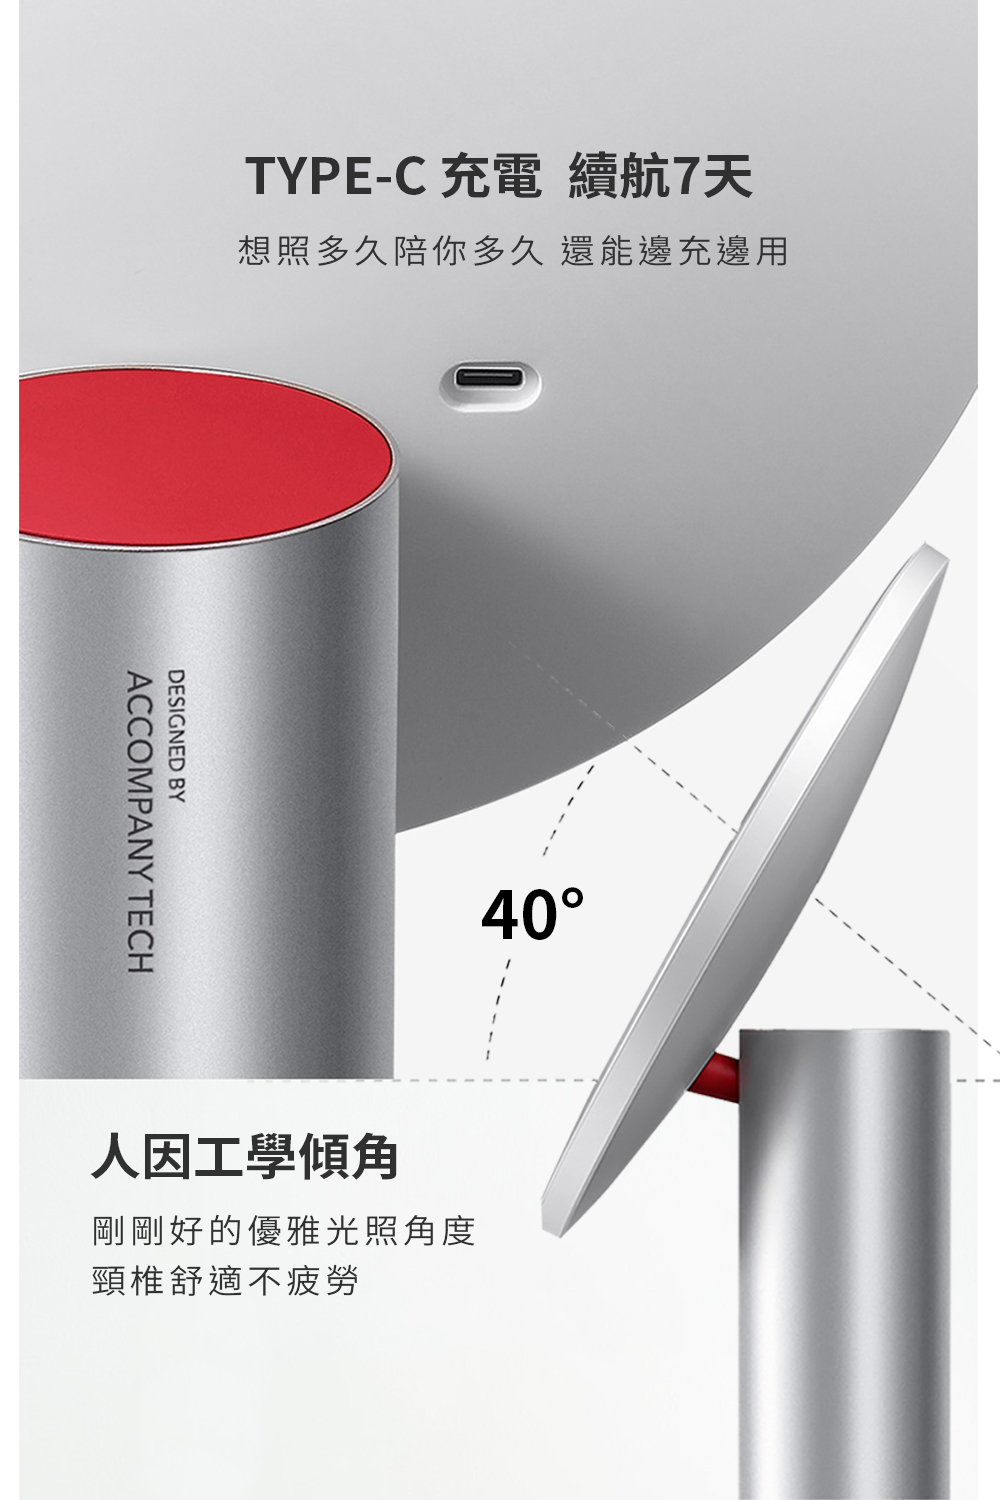 全新第三代AMIRO Oath 自動感光 LED化妝鏡(國際精裝彩盒版)-雲貝白